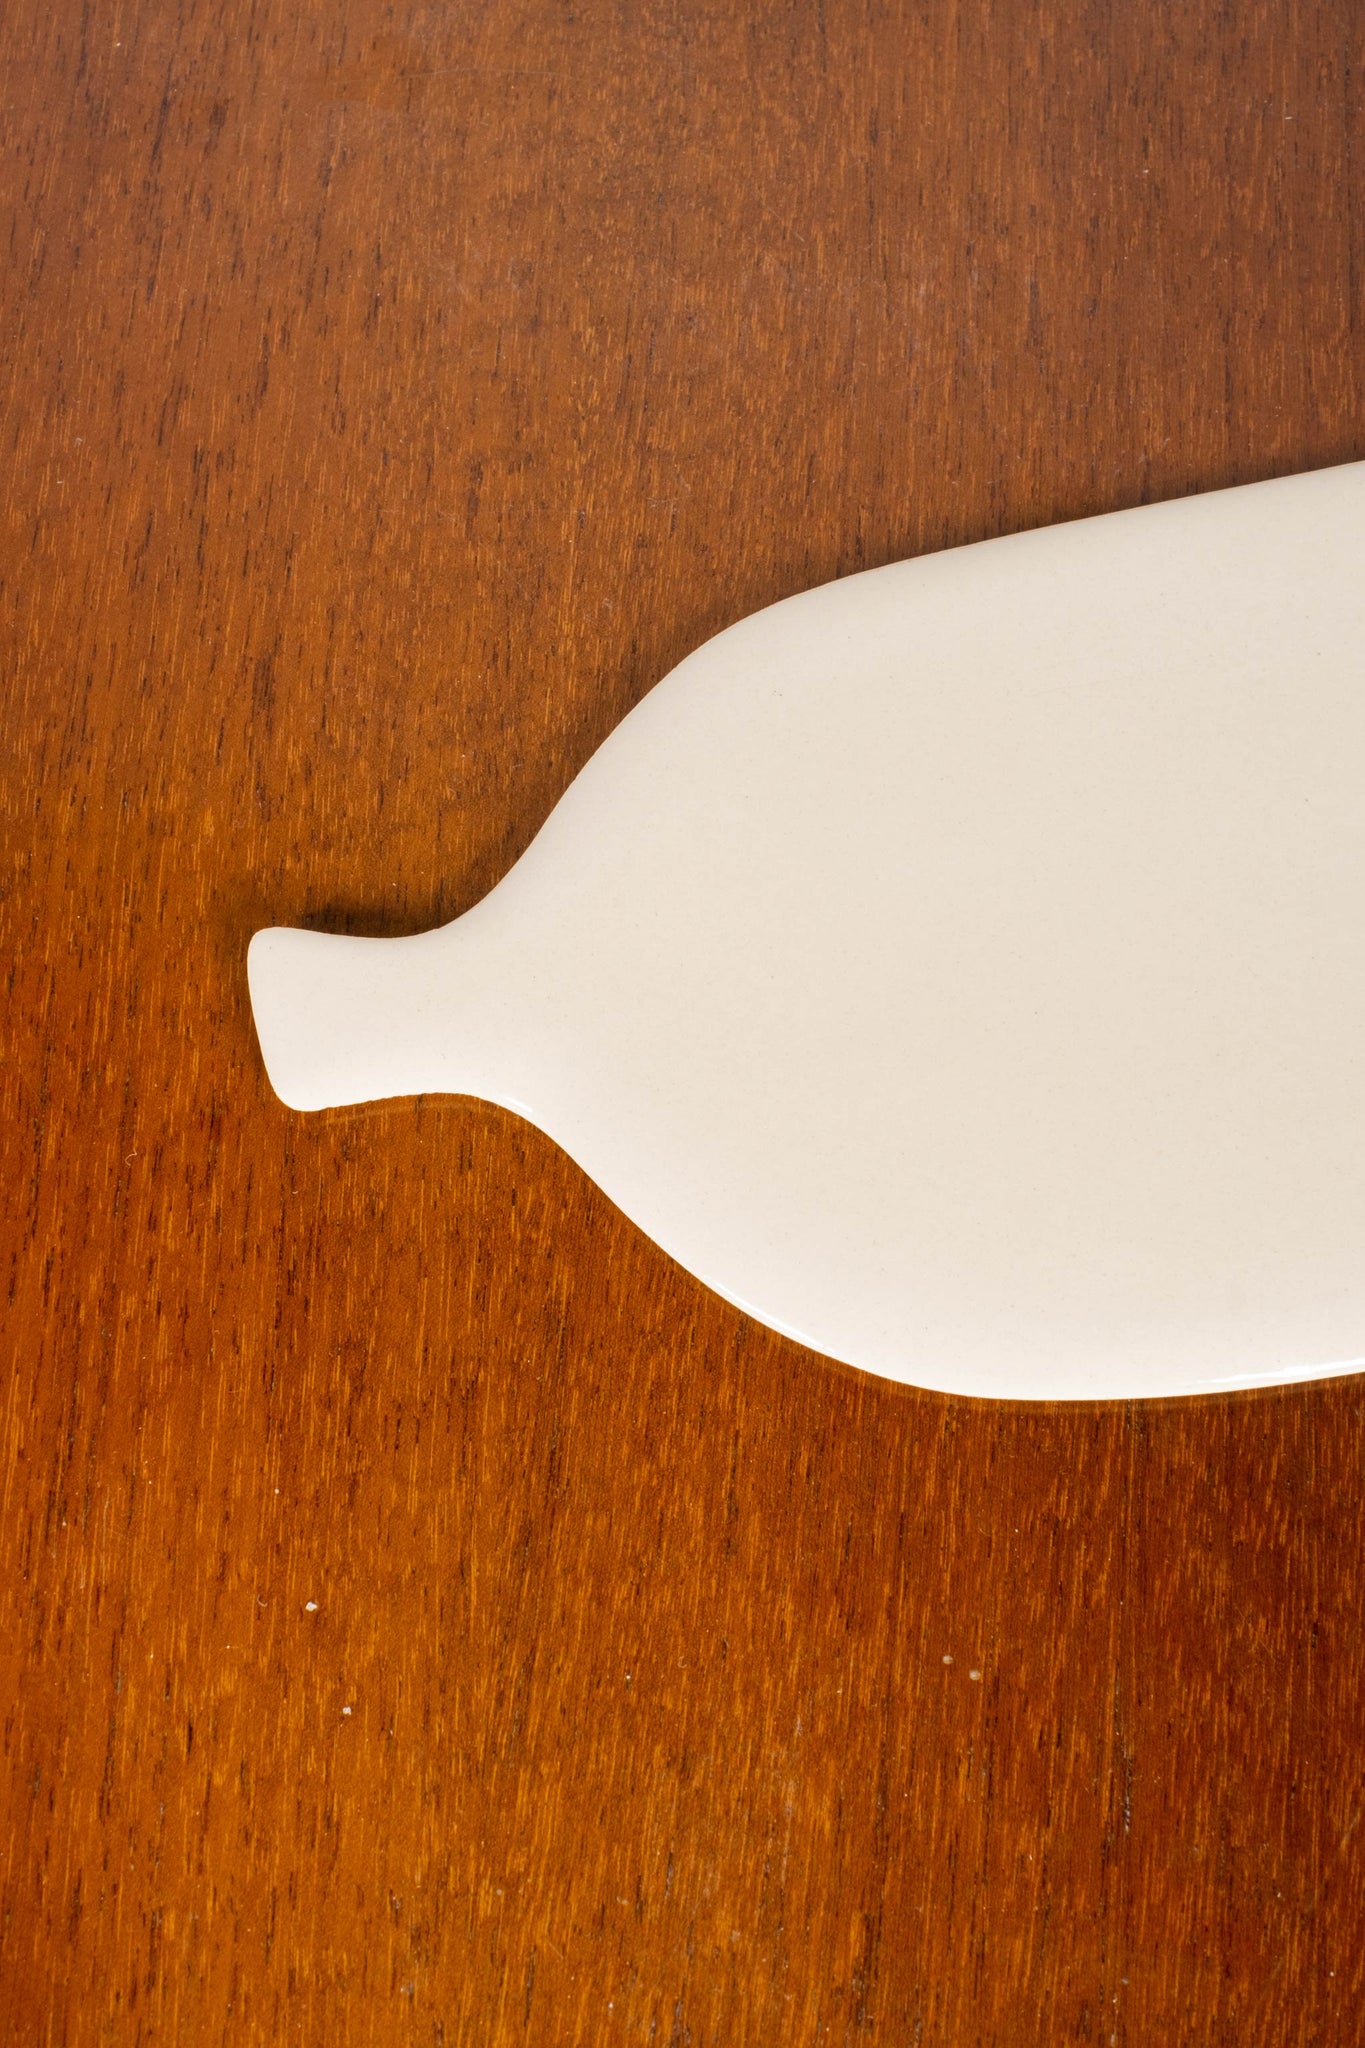 Medium Board + Flake Bowl Kogevina Ceramics, handle detail